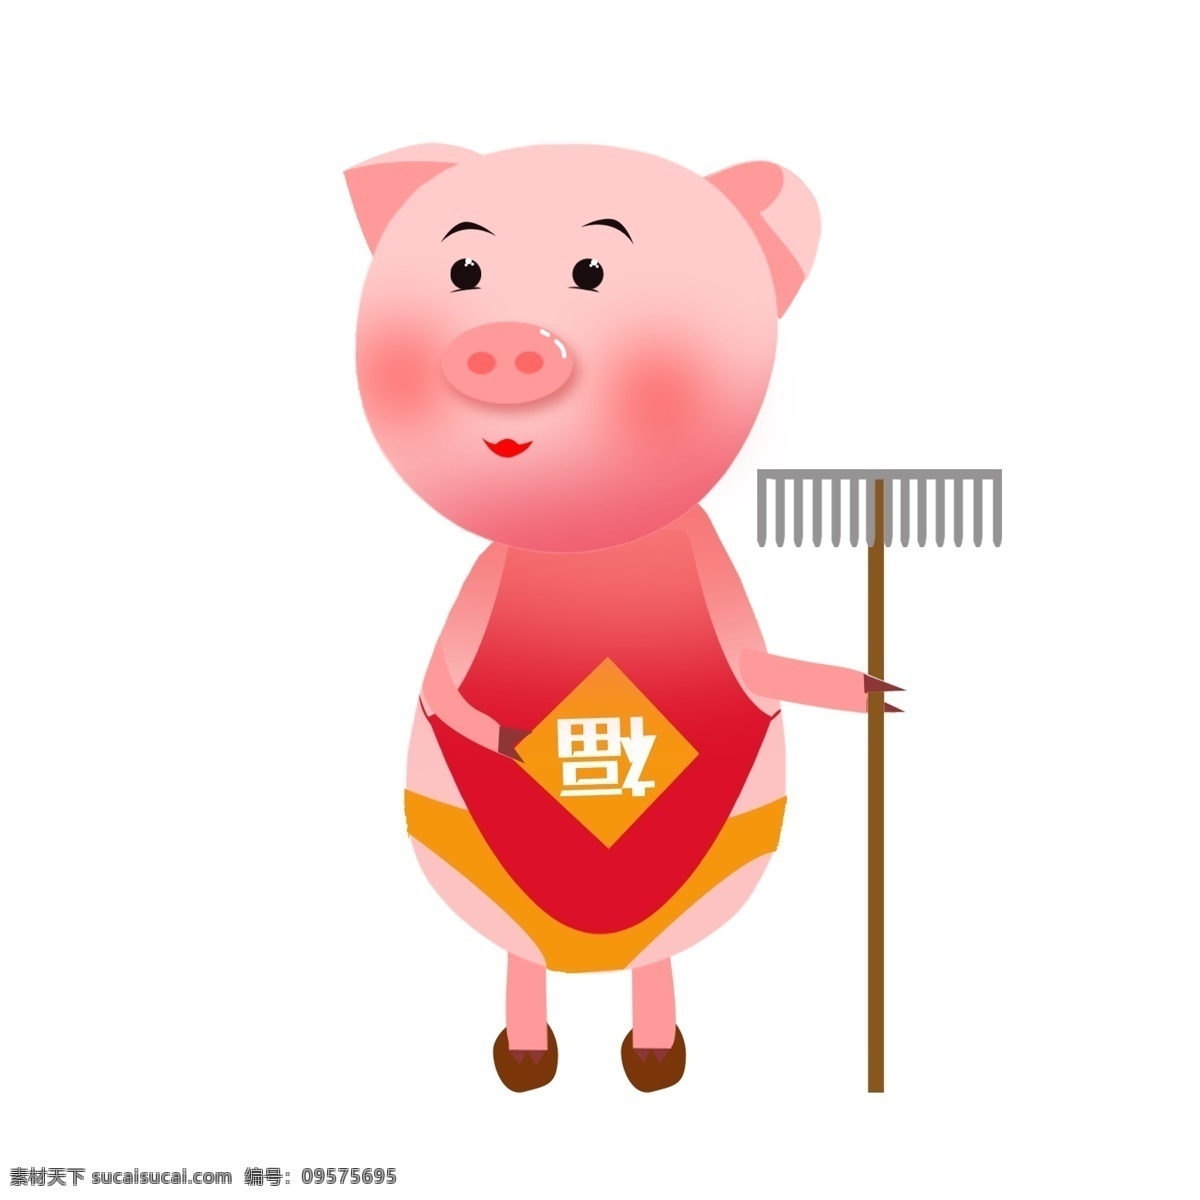 原创 小 猪 粉红 卡通 可爱 动物 元素 商用 2019 生肖 猪年 小猪 卡通可爱 福猪 肚兜 钉耙 粉色